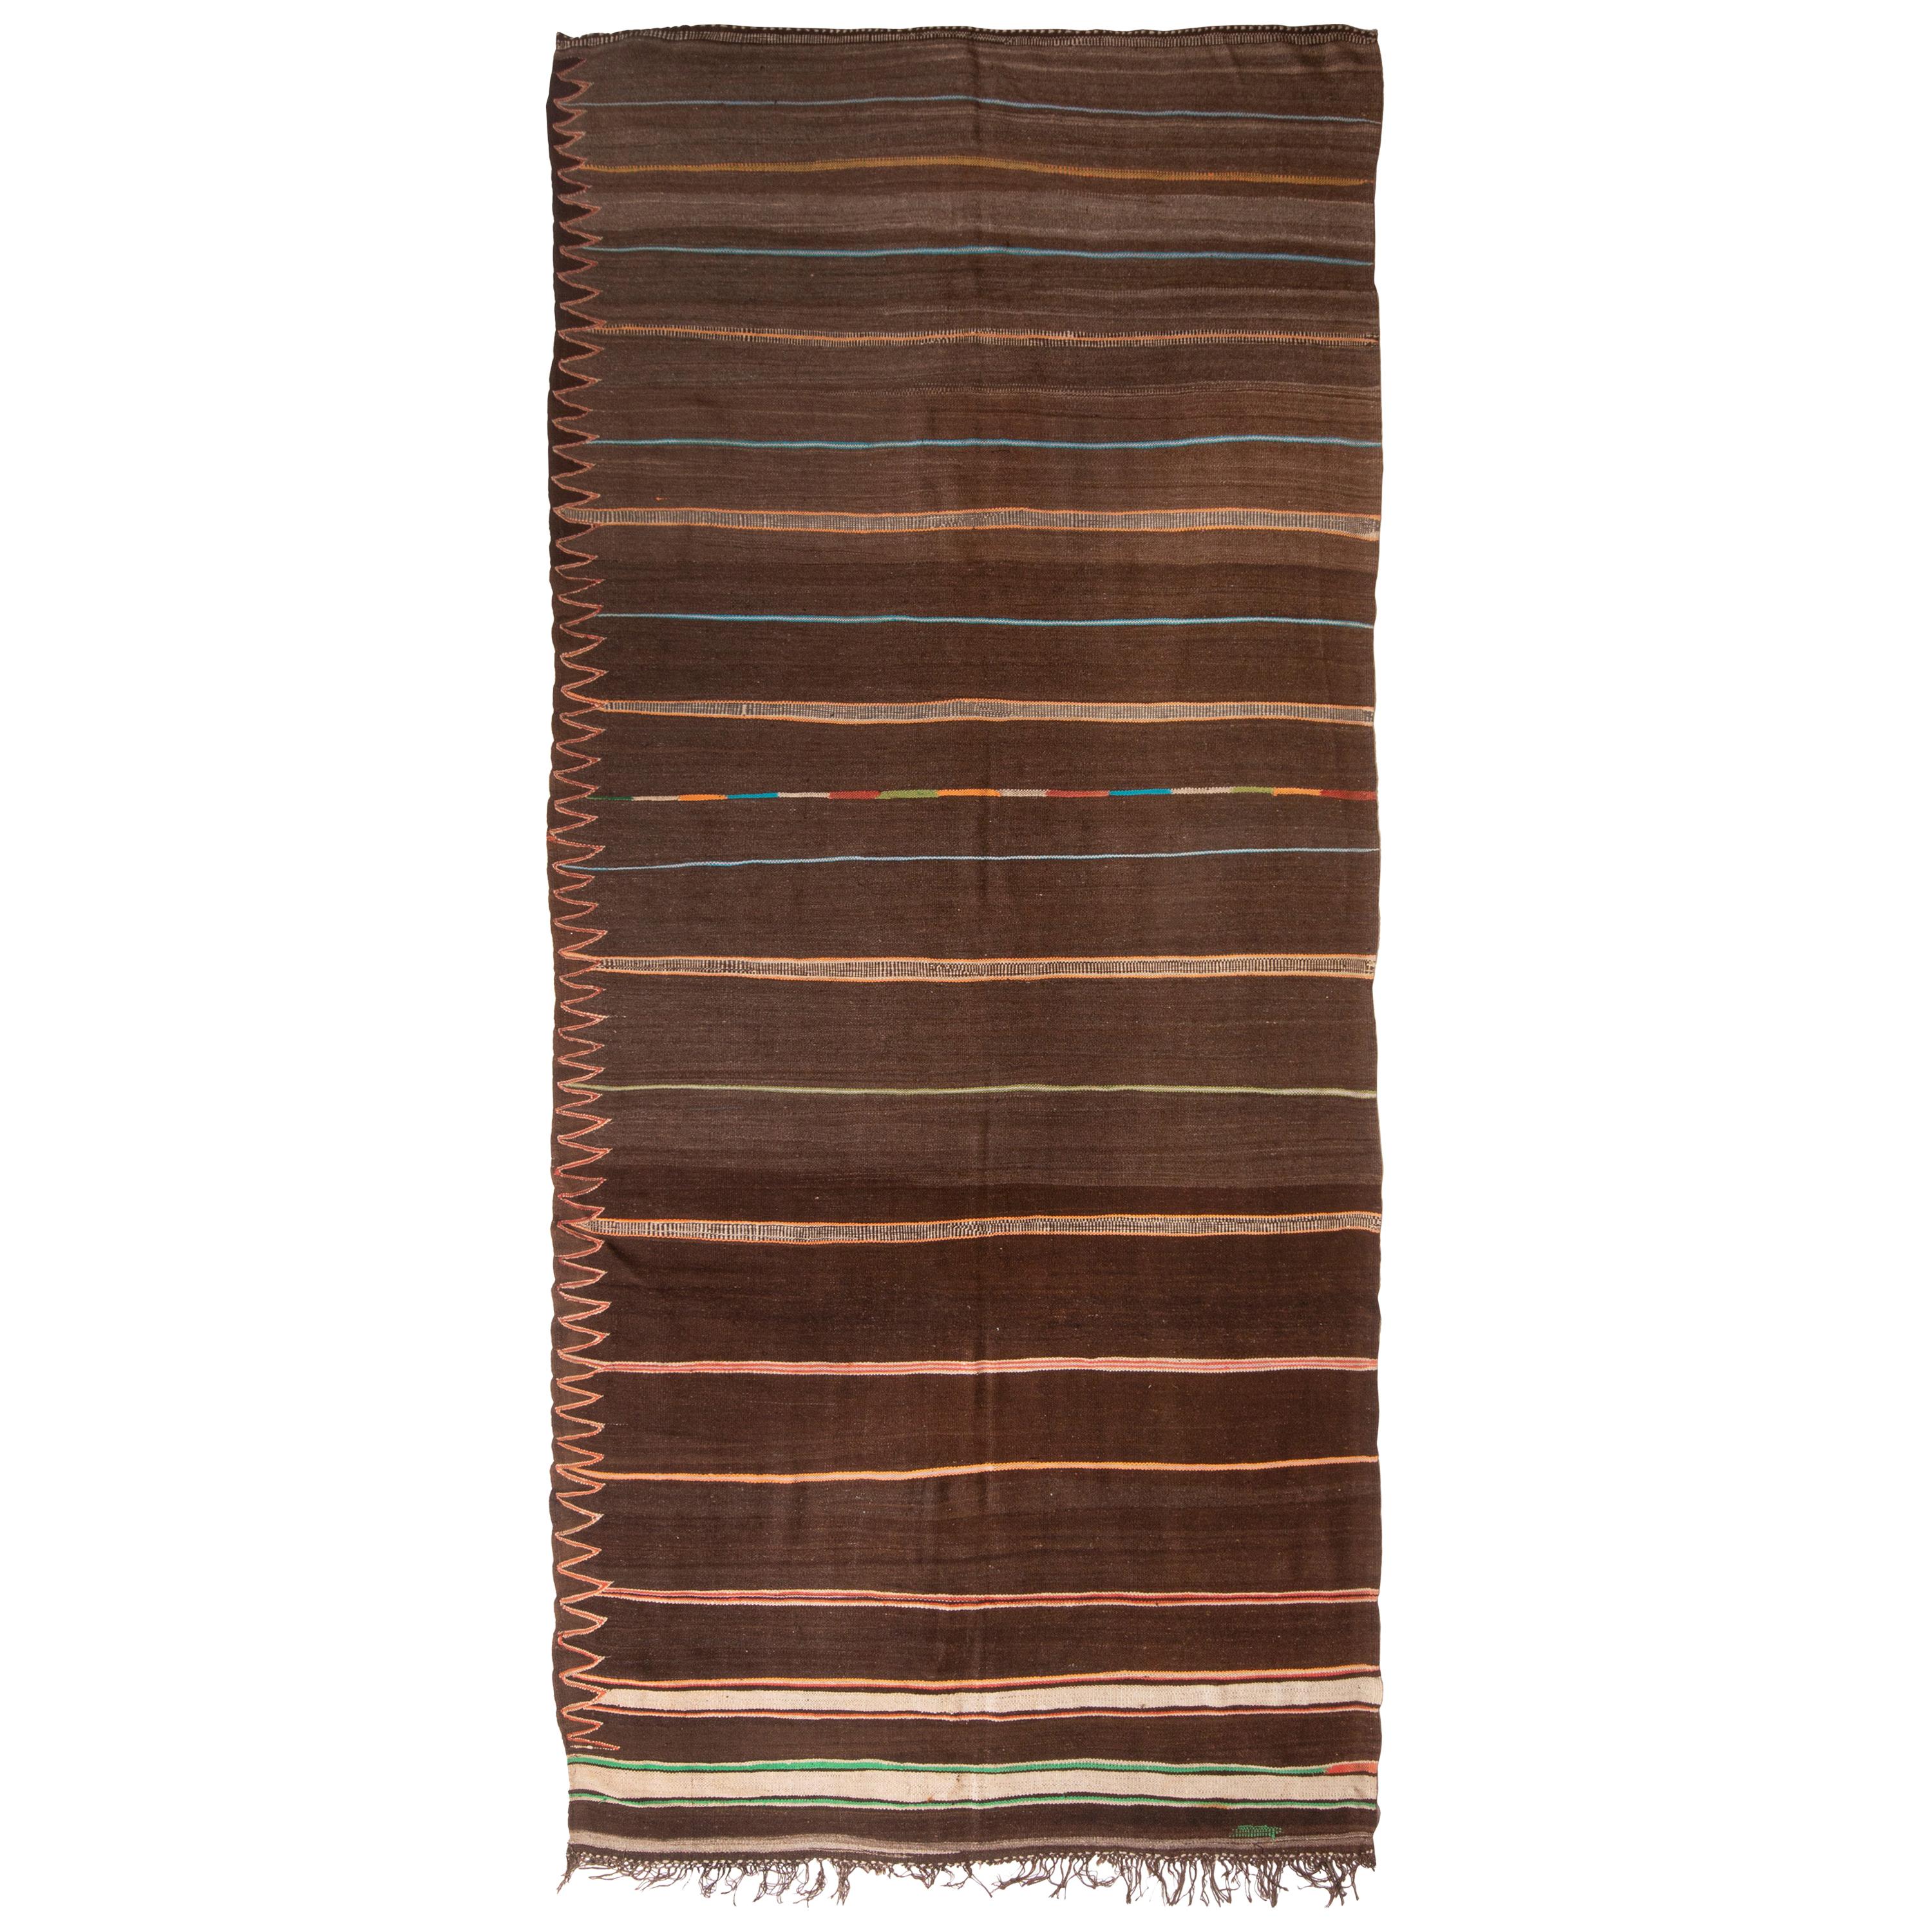 1950s Midcentury Vintage Moroccan Kilim Striped Brown Berber Flat-Weave